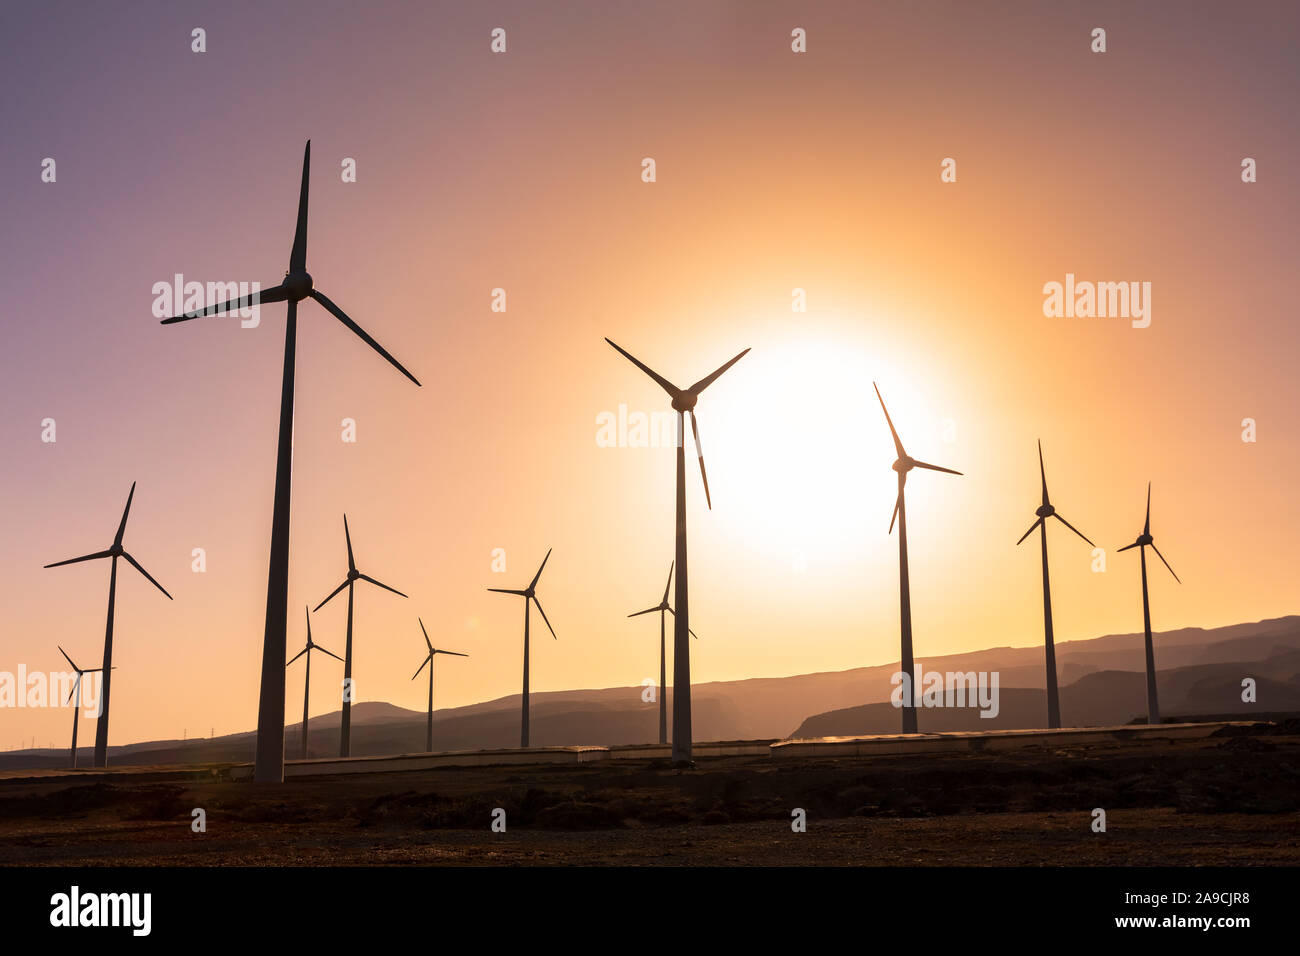 Windenergieanlage Farm bei Sonnenuntergang zur Erzeugung erneuerbarer Energie, mehrere Mühle ökologische Erzeugung sauberer Strom, nachhaltige Entwicklung Stockfoto